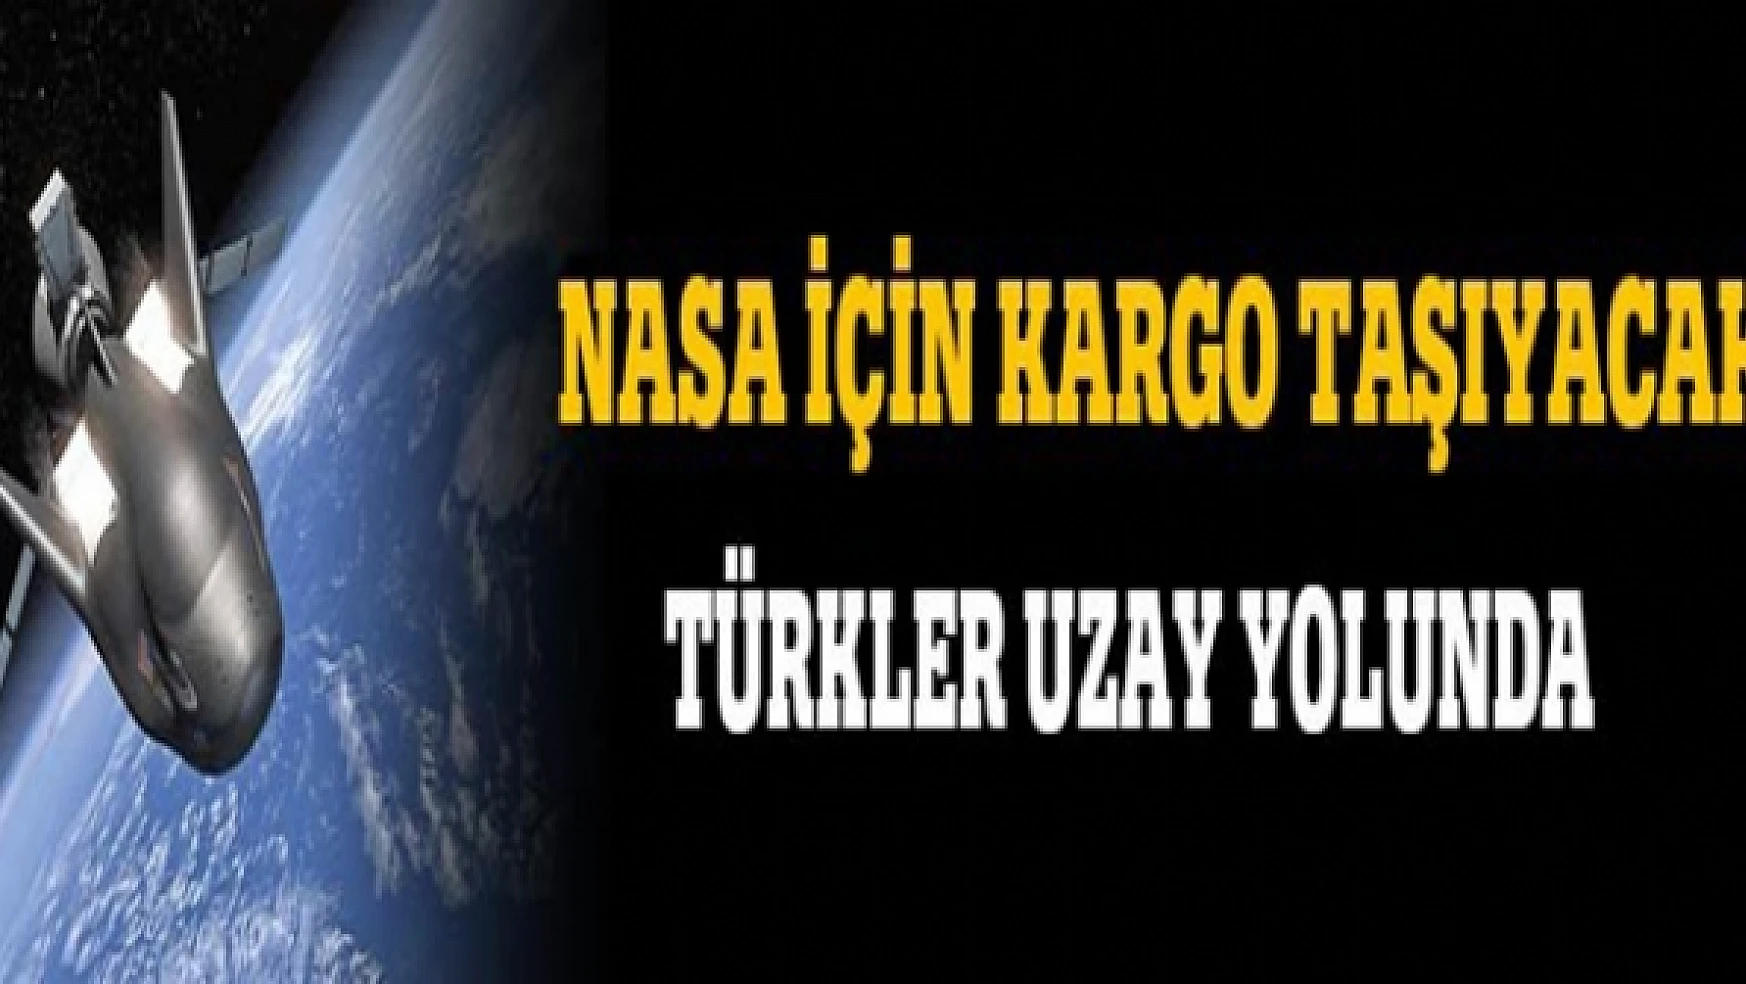 Türkler uzay yolunda